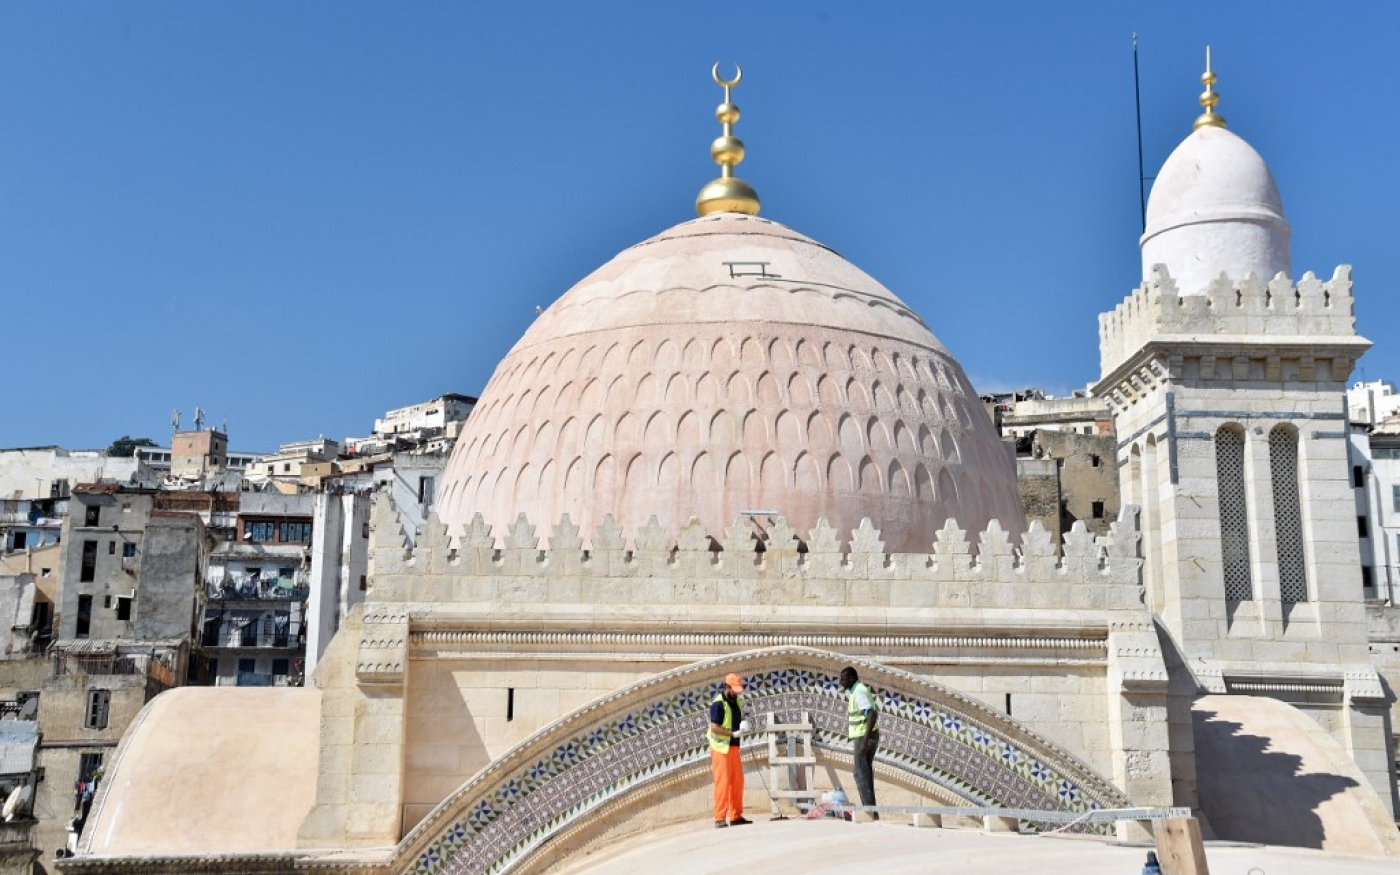 Des ouvriers restaurent le toit de la mosquée Ketchaoua dans le cadre d’une réhabilitation financée par la Turquie, à Alger, le 15 octobre 2017 (AFP/Ryad Kramdi)